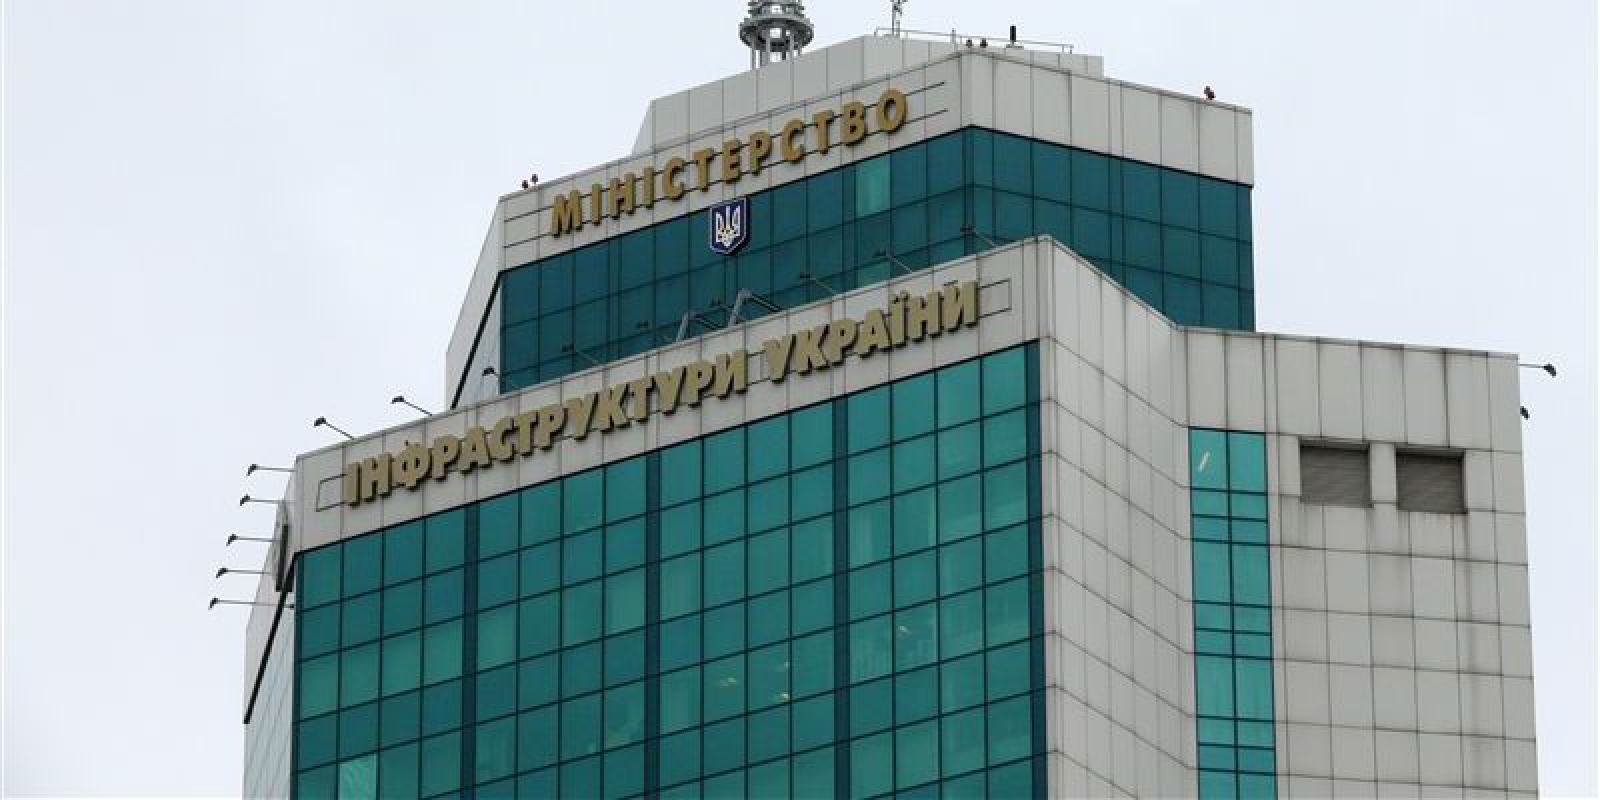 Мининфраструктуры подаст апелляцию на решение Шевченковского райсуда